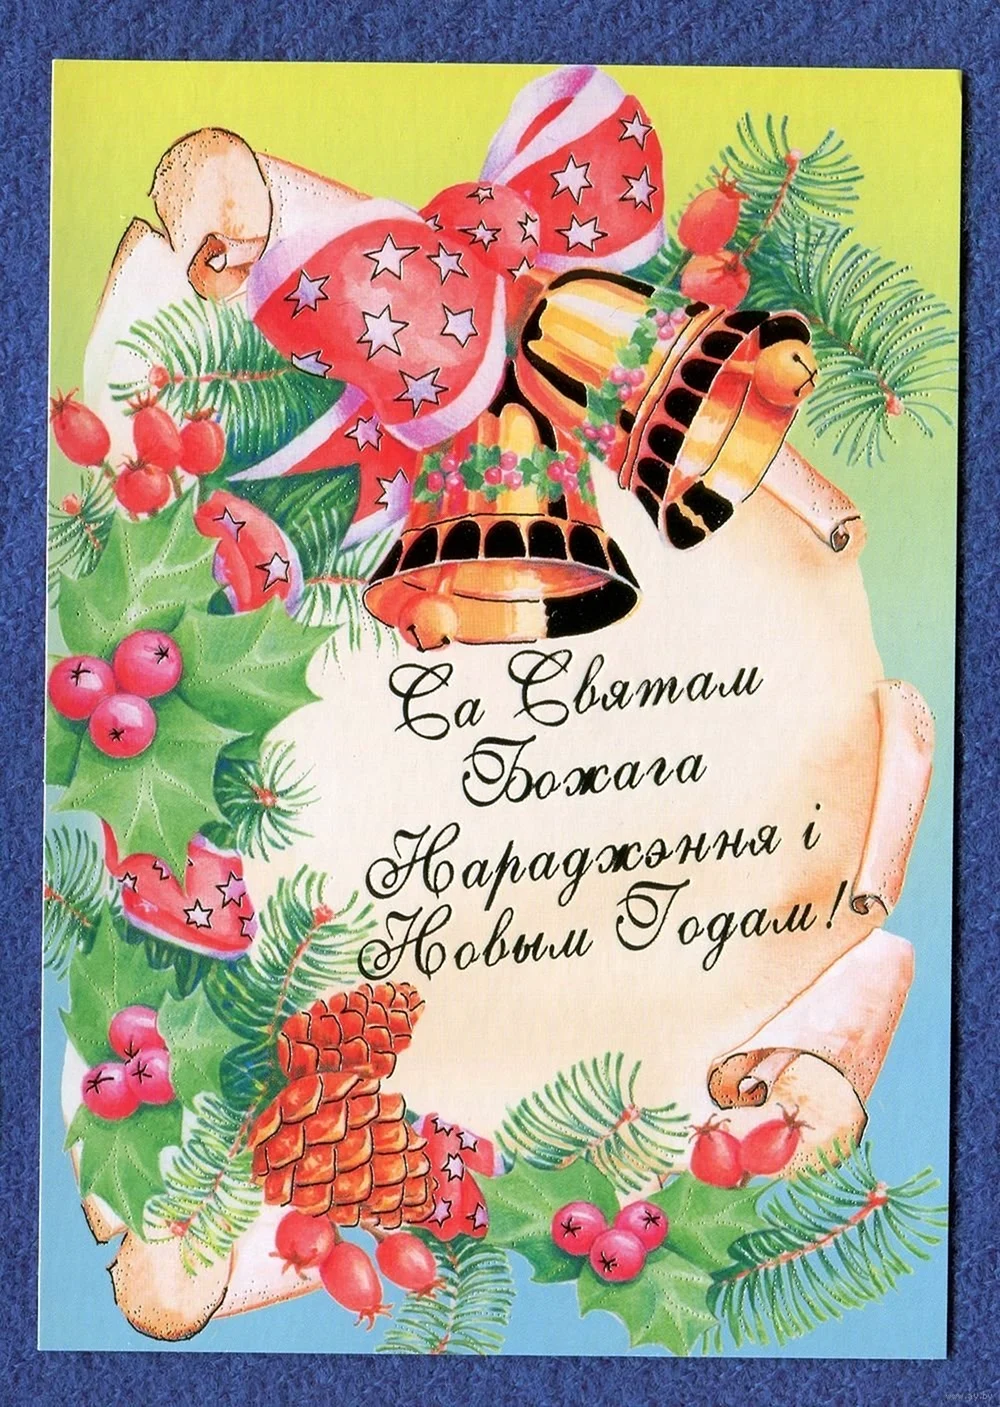 Новый год на белорусском языке